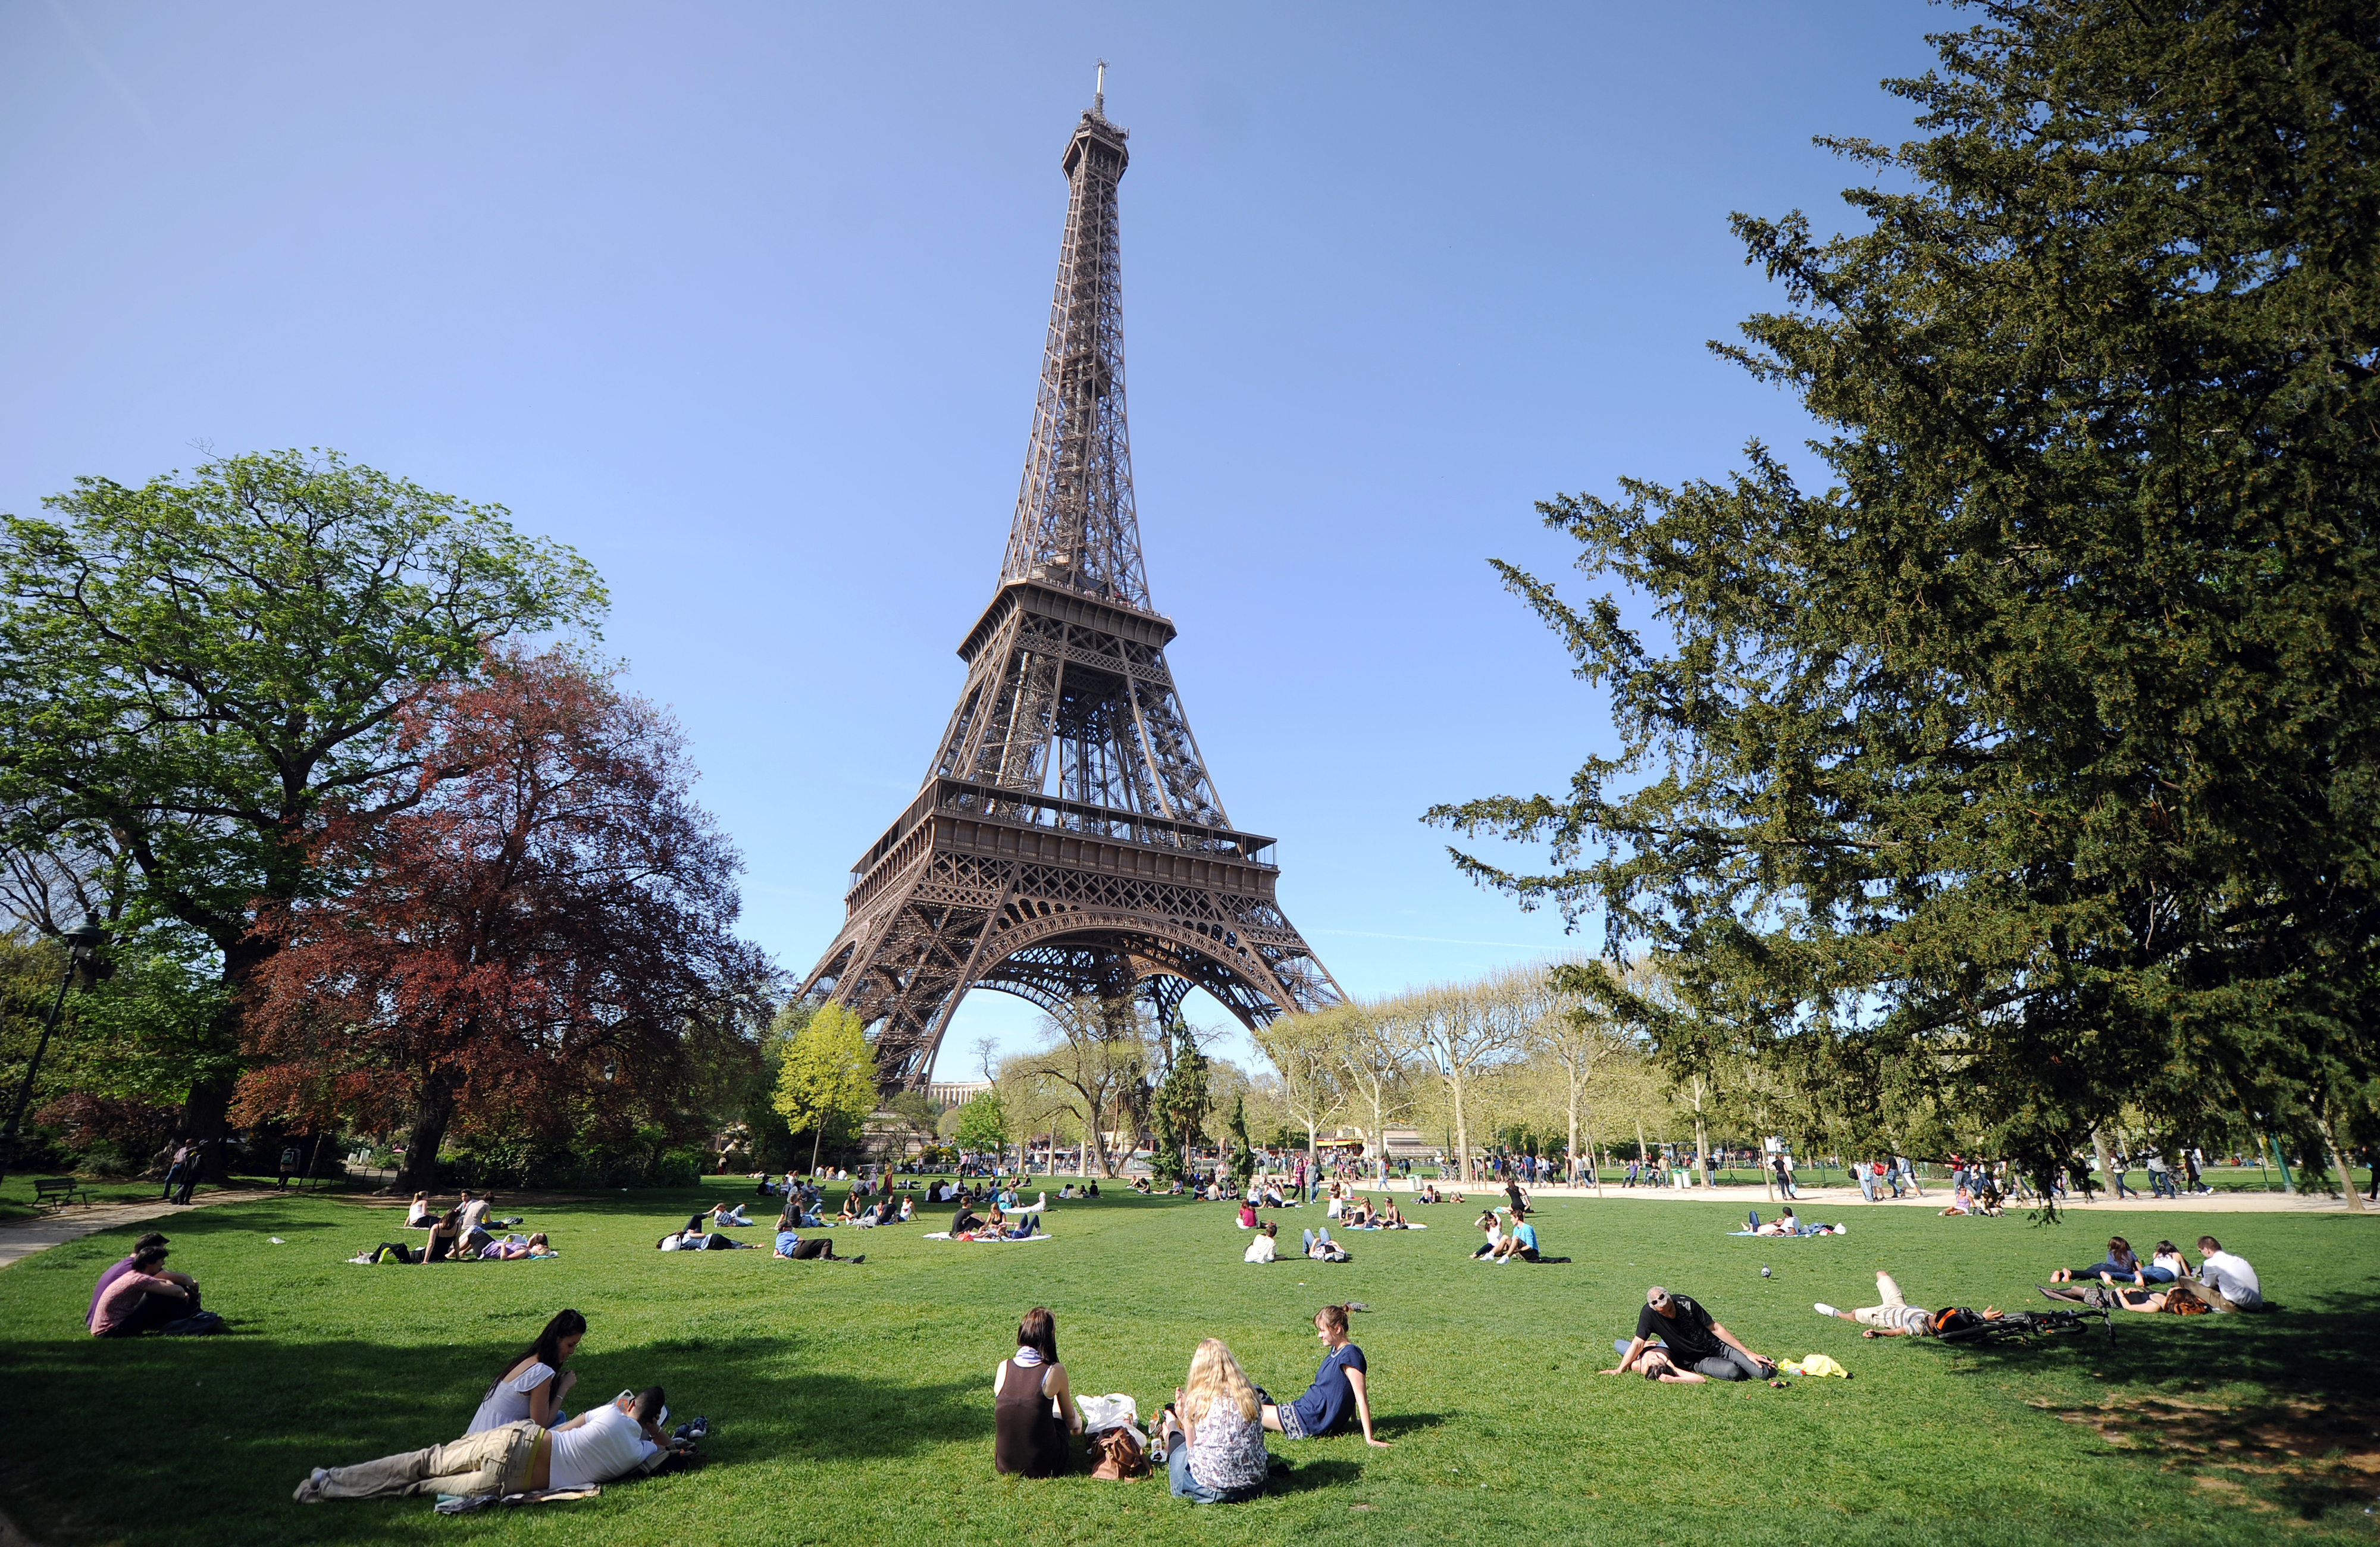 Достопримечательность Парижа Эйфелева башня